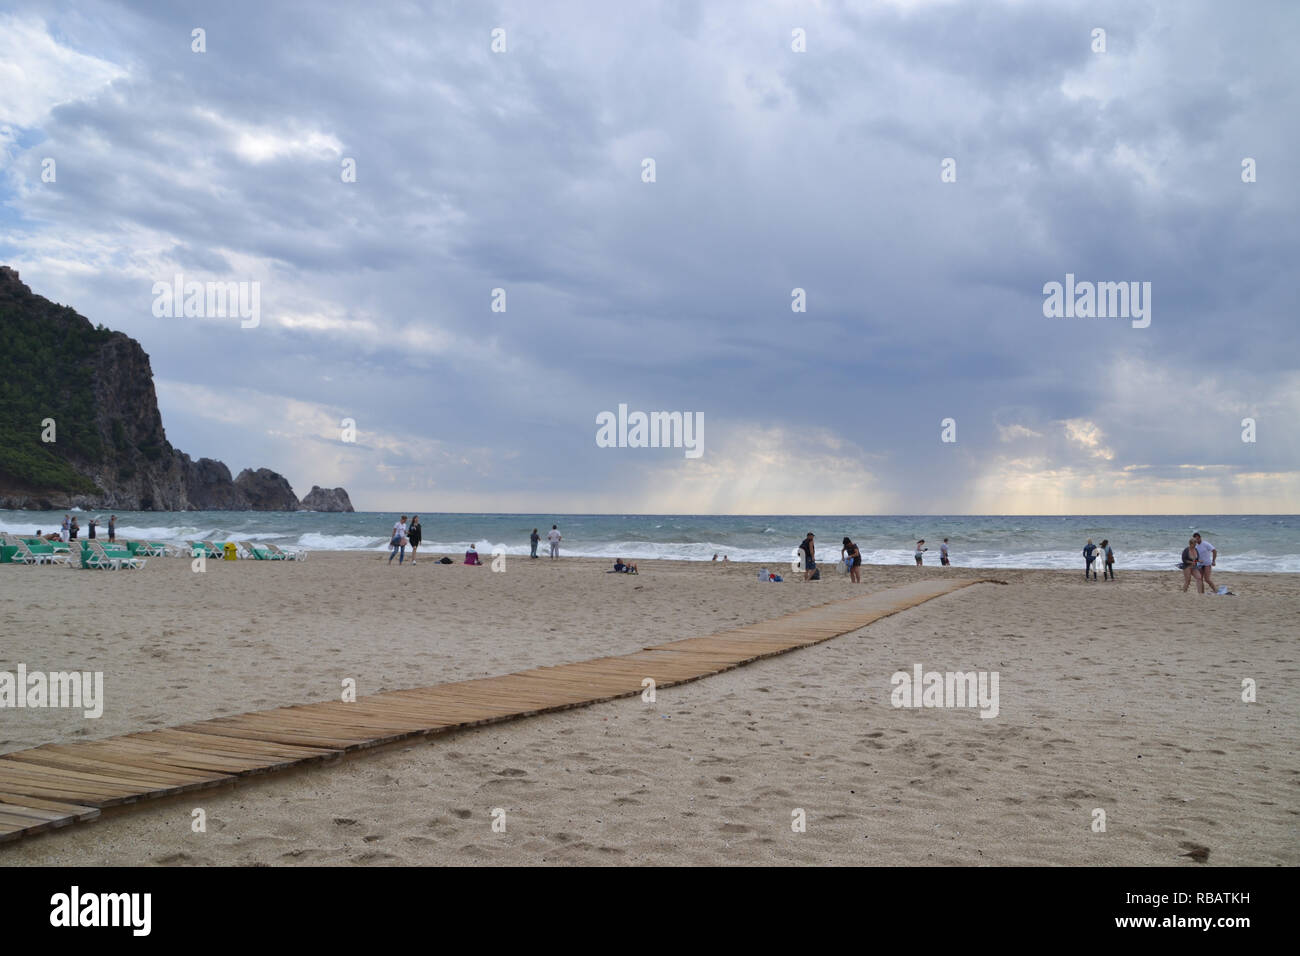 Alanya Turchia ottobre 25, 2018: giorno nuvoloso sulla spiaggia di Cleopatra in Alanya, Turchia, gente sulla spiaggia a fare le attività per il tempo libero Foto Stock